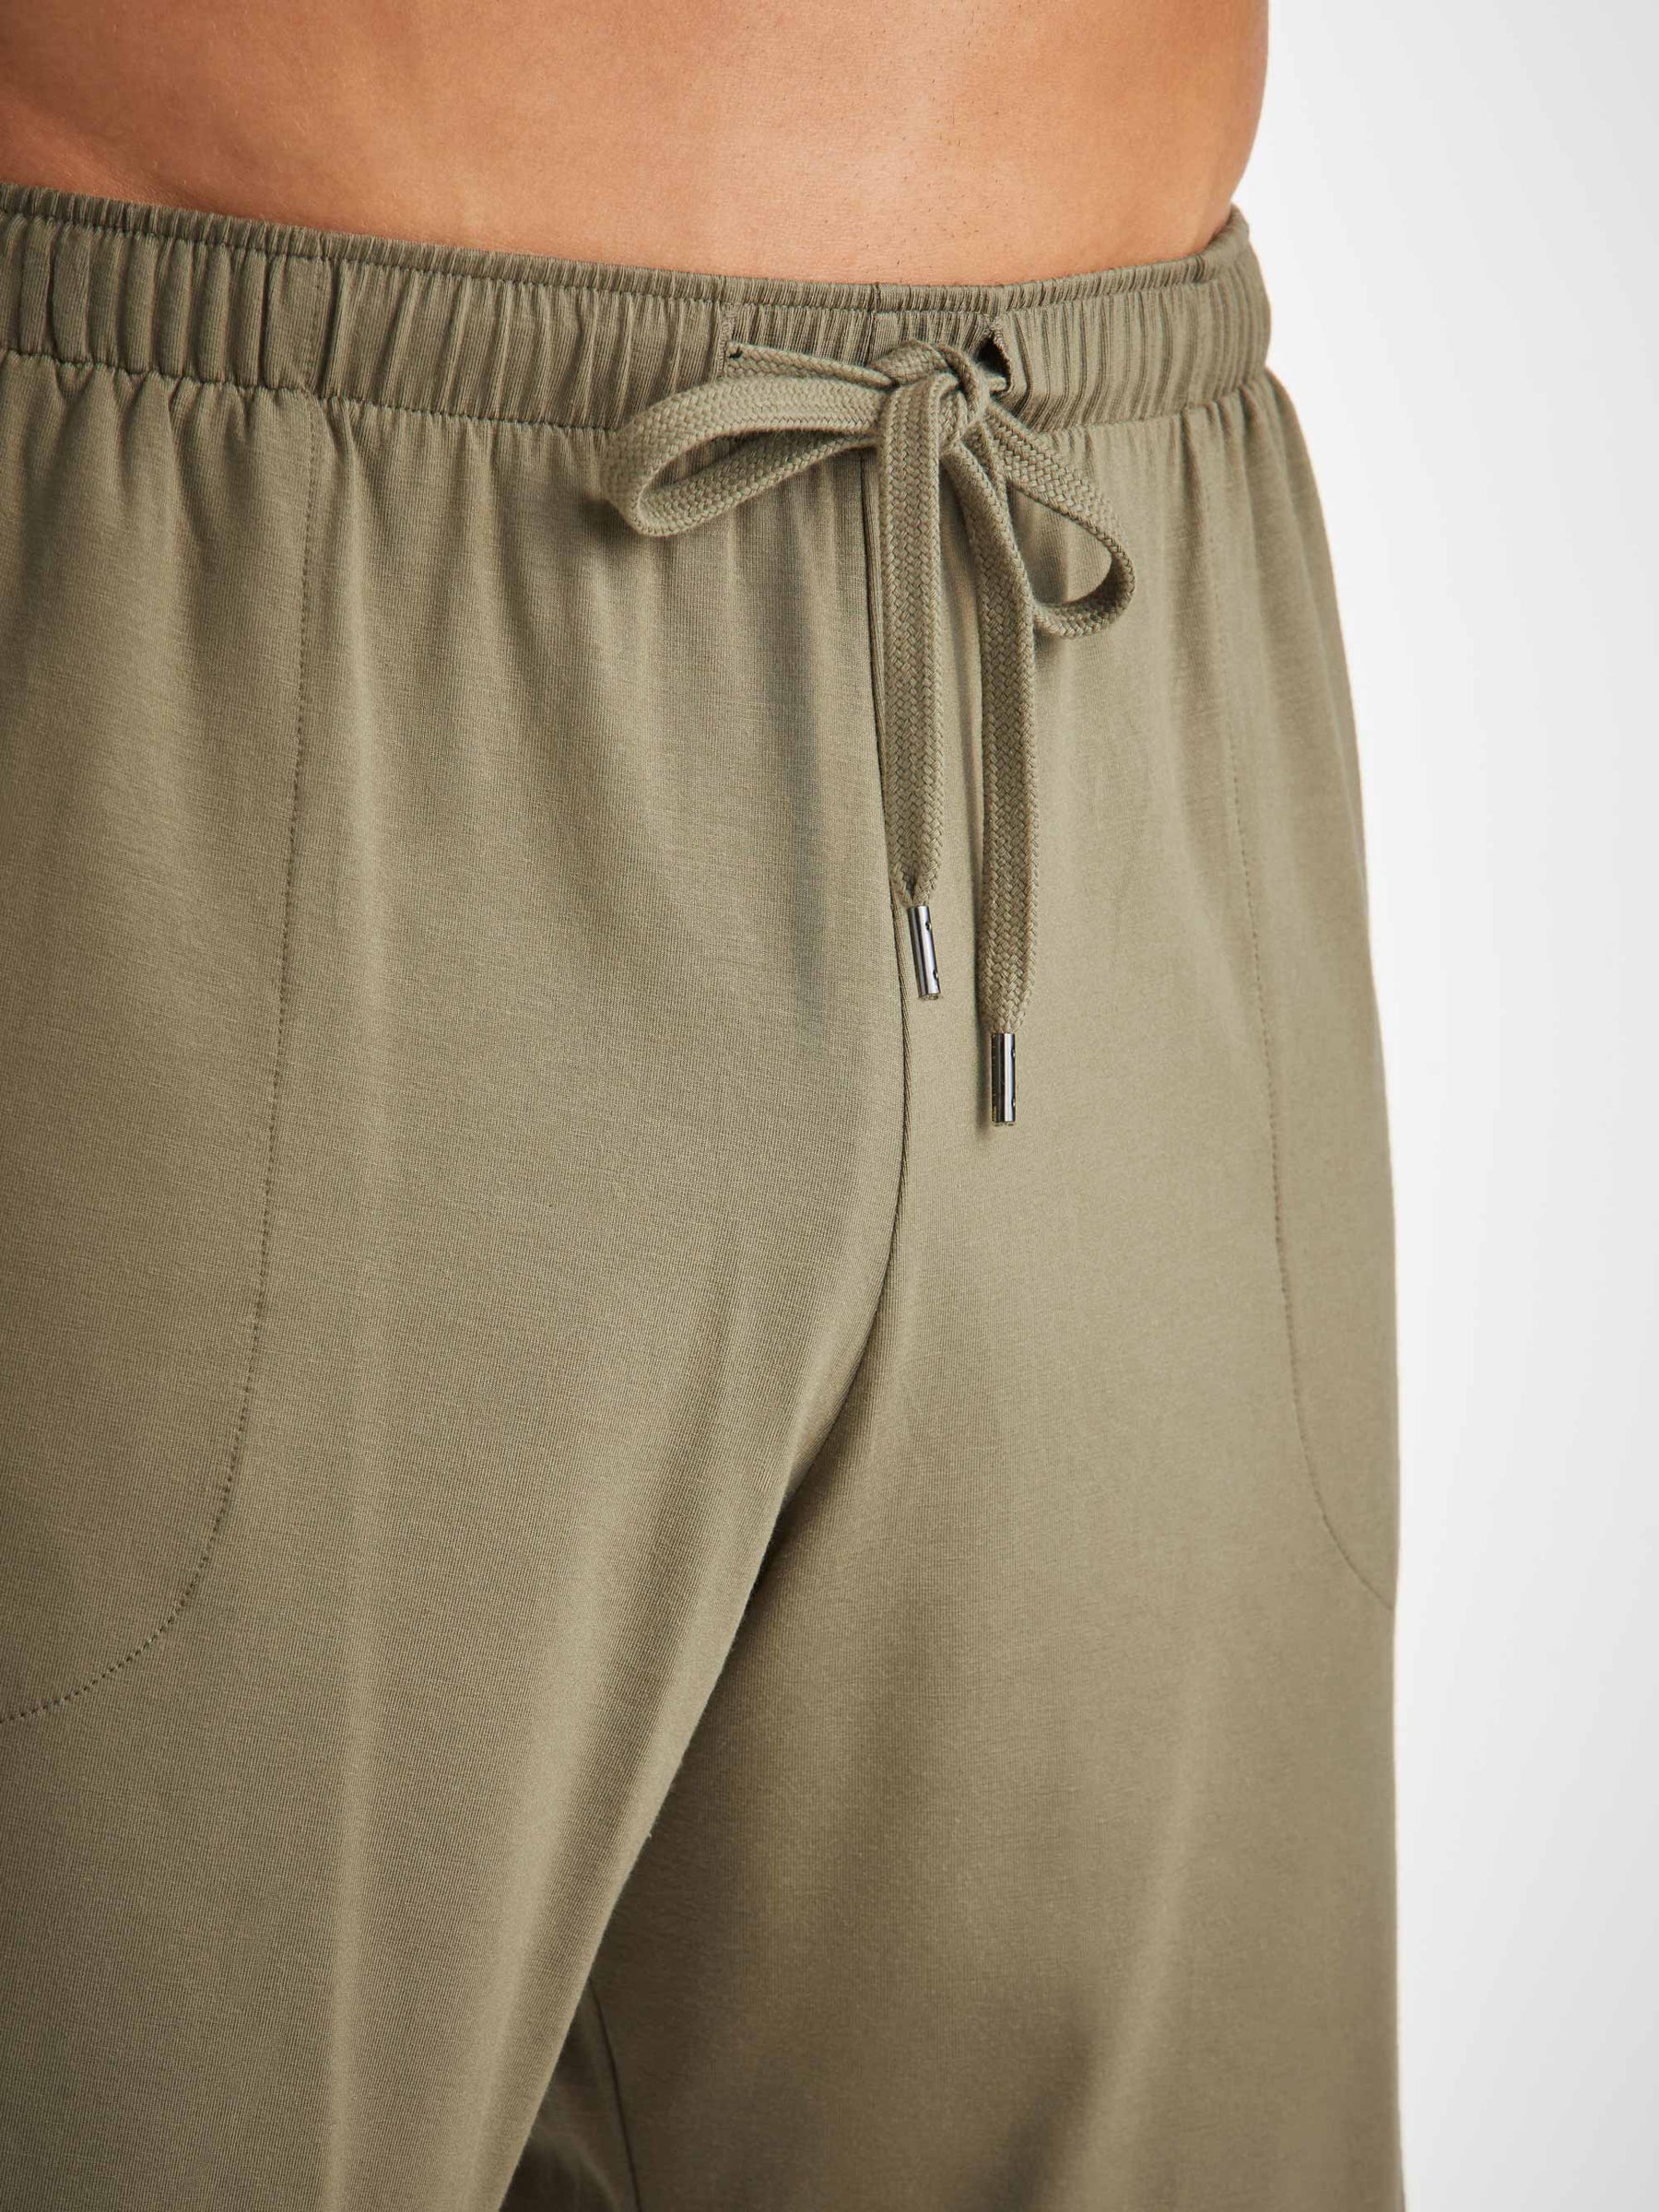 Men's Lounge Shorts Basel Micro Modal Stretch Khaki